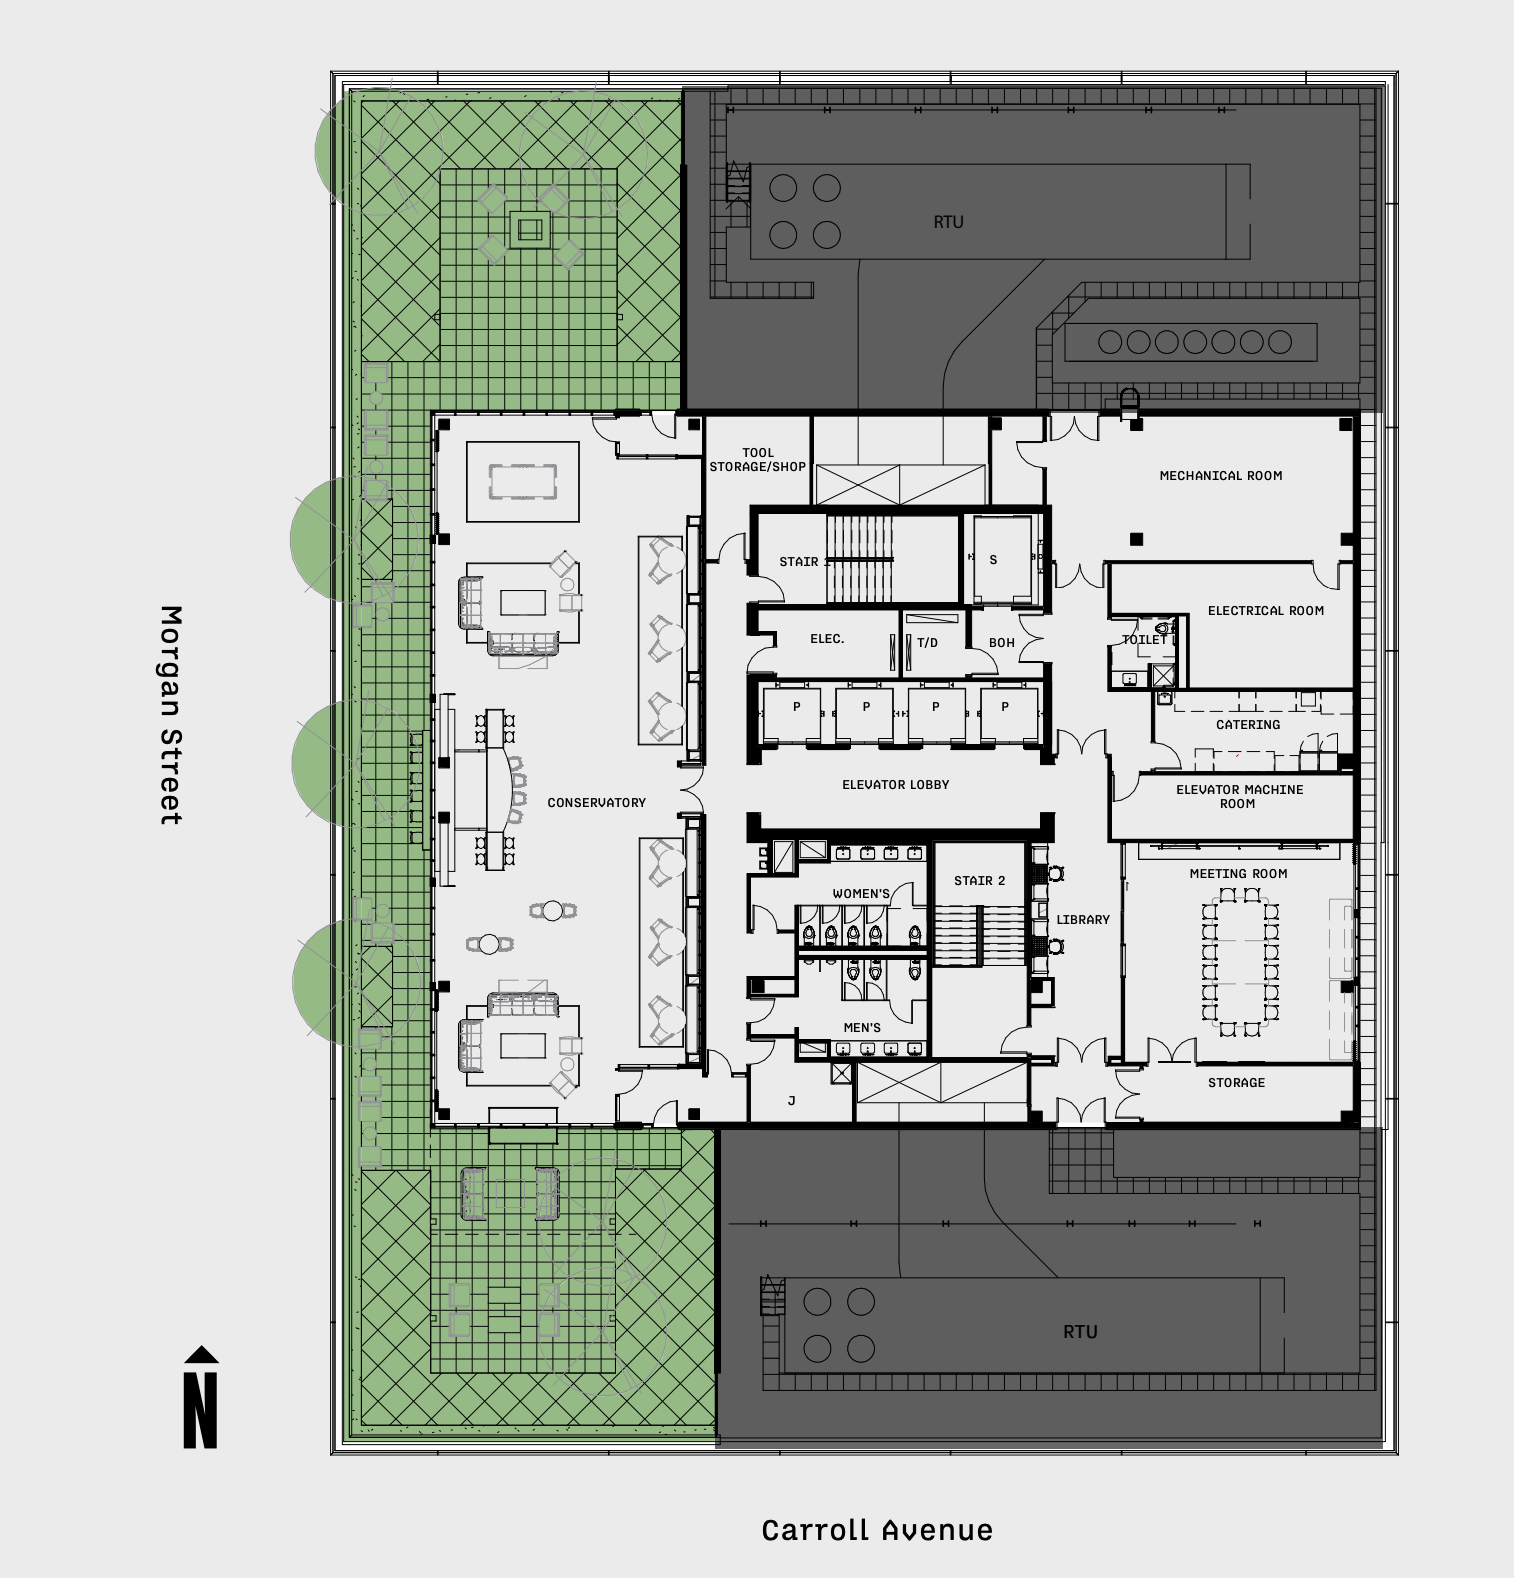 345 N Morgan Street amenity floor plan